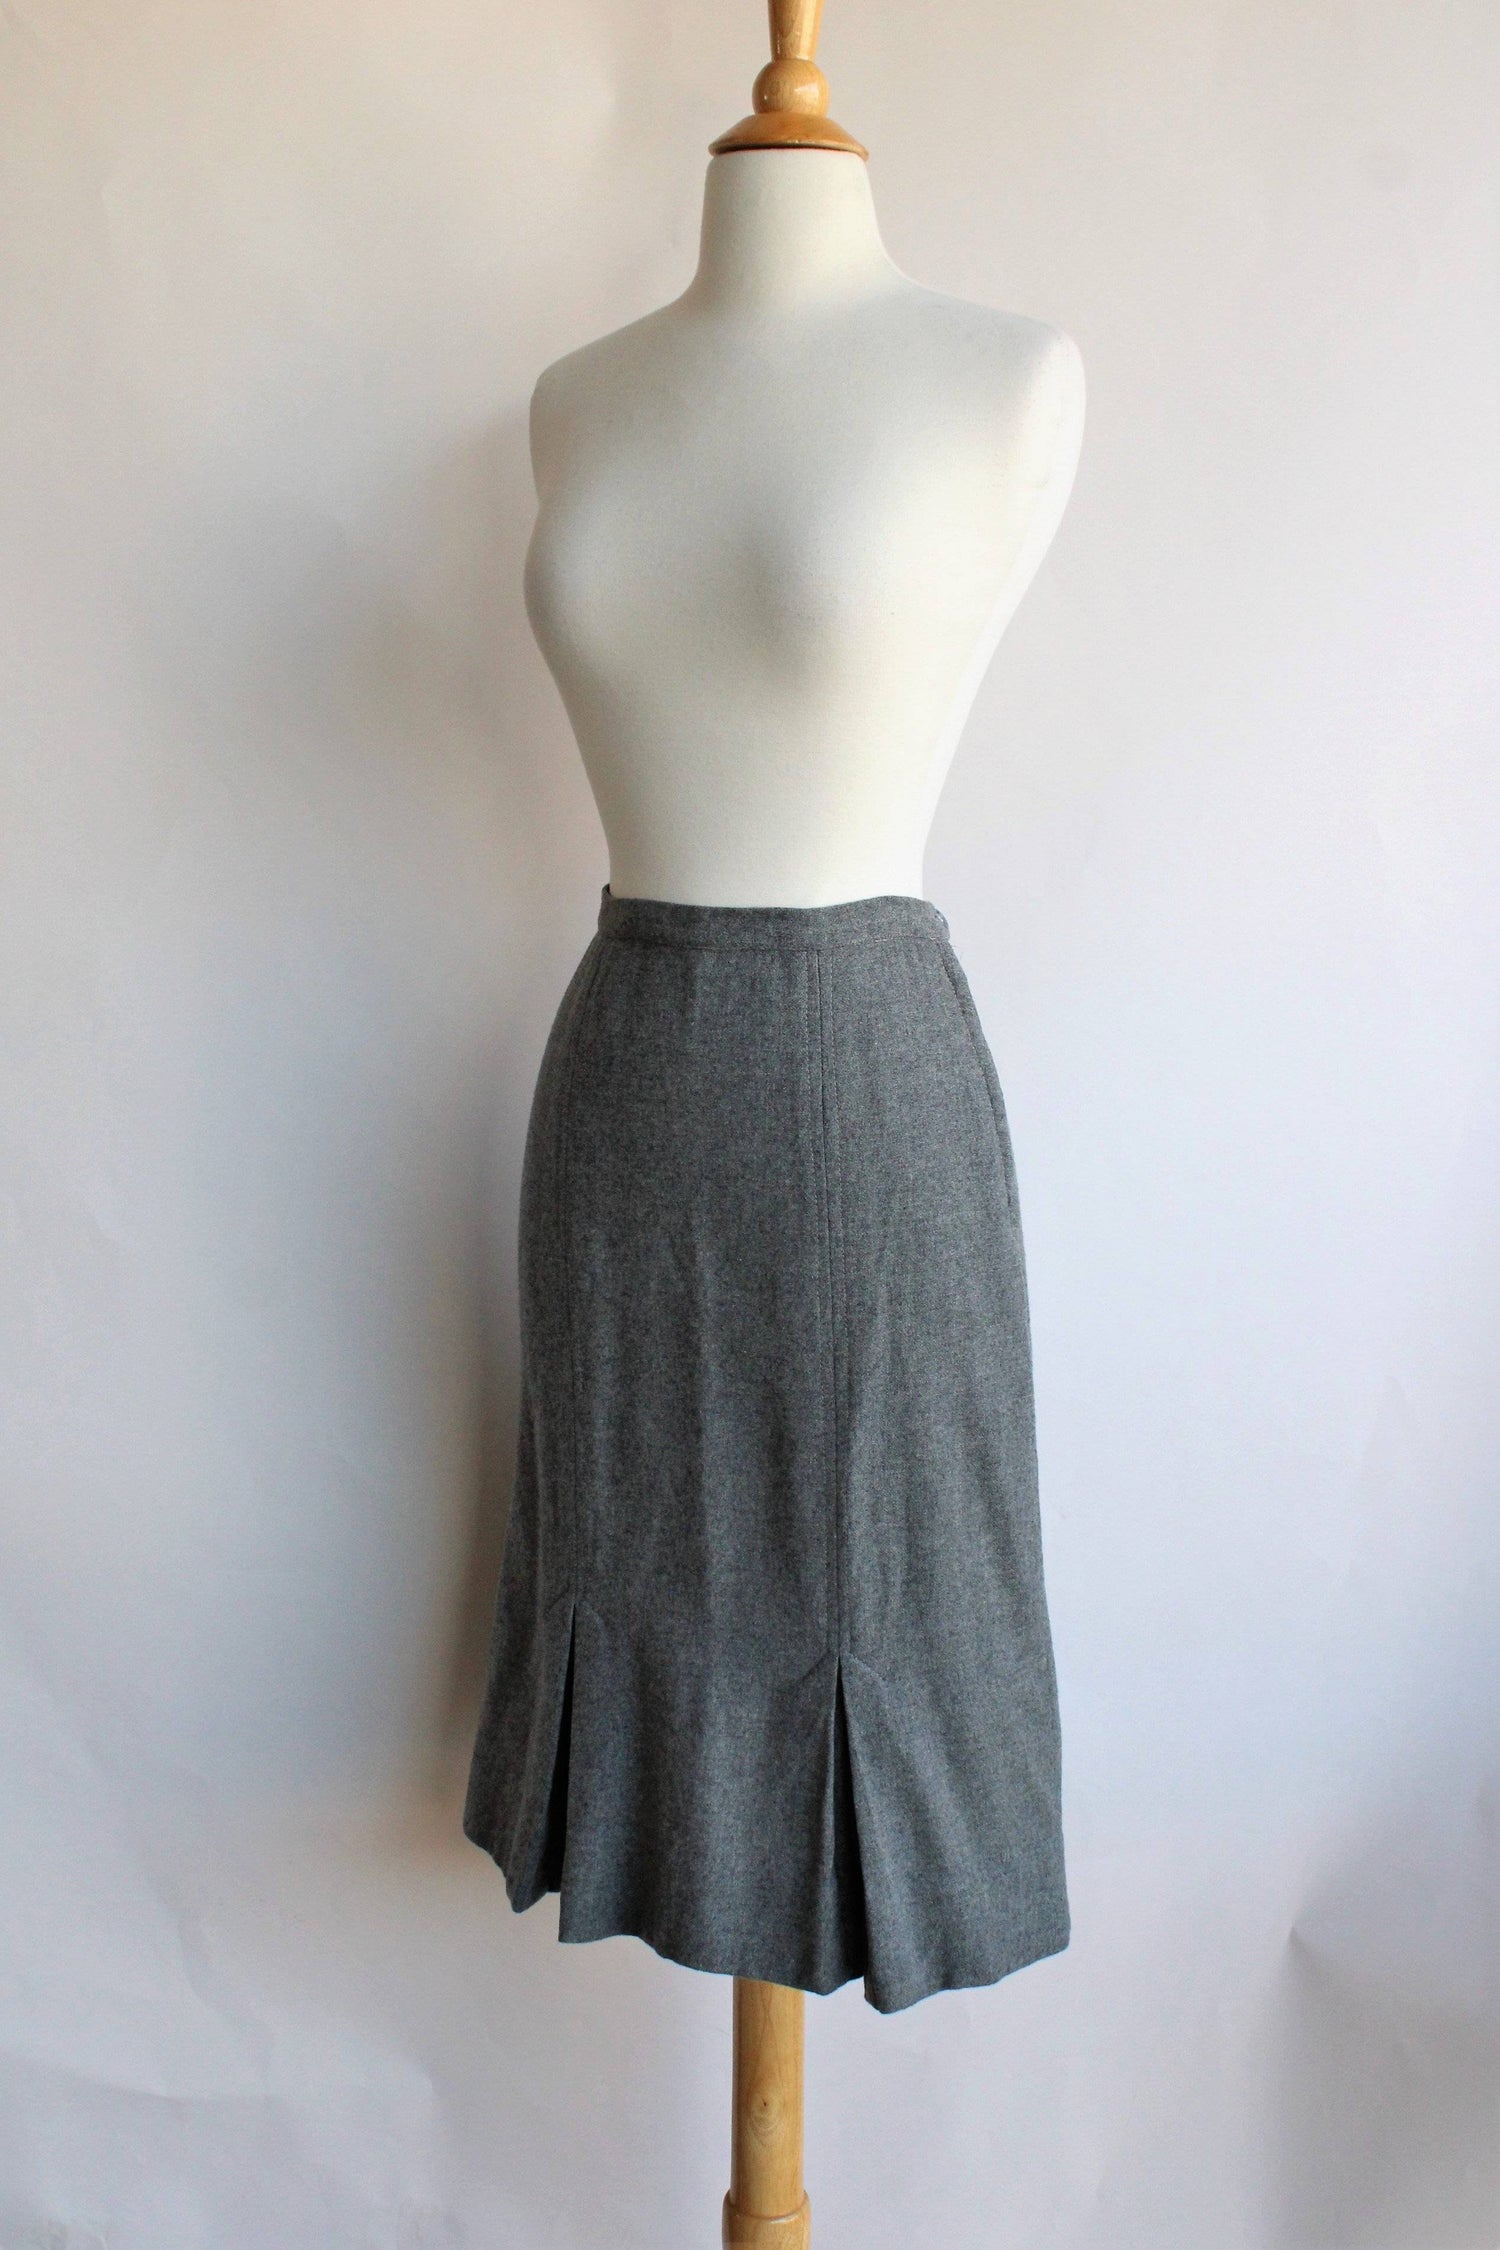 Vintage 1950s Grey Wool Skirt by Century of Boston-The Black Velvet Emporium-1950s Skirt,Autumn Skirt,Century of Boston,Gray,Grey Wool,Kick Pleats,Kickpleat,Metal Zipper,Pencil Skirt,Winter Skirt